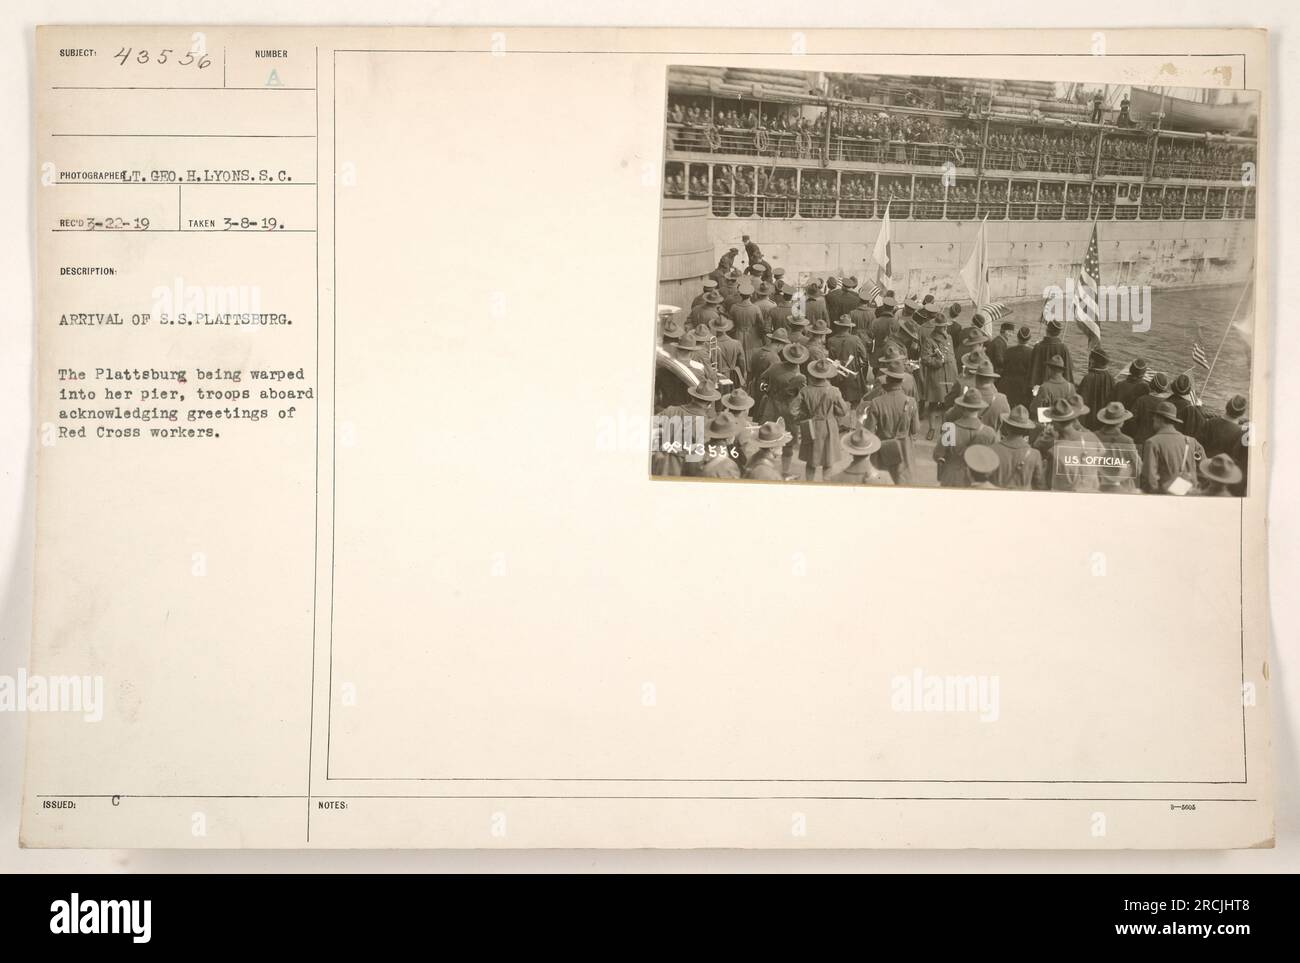 Das Bild zeigt das US-Militärschiff S.S. Plattsburg wird in den ausgewiesenen Pier geführt, während die Truppen an Bord die Grüße der Arbeiter des Roten Kreuzes anerkennen. Das Foto wurde am 8. Juli 1919 aufgenommen und ist Teil der Sammlung mit der Nummer 111-SC-43556. Stockfoto